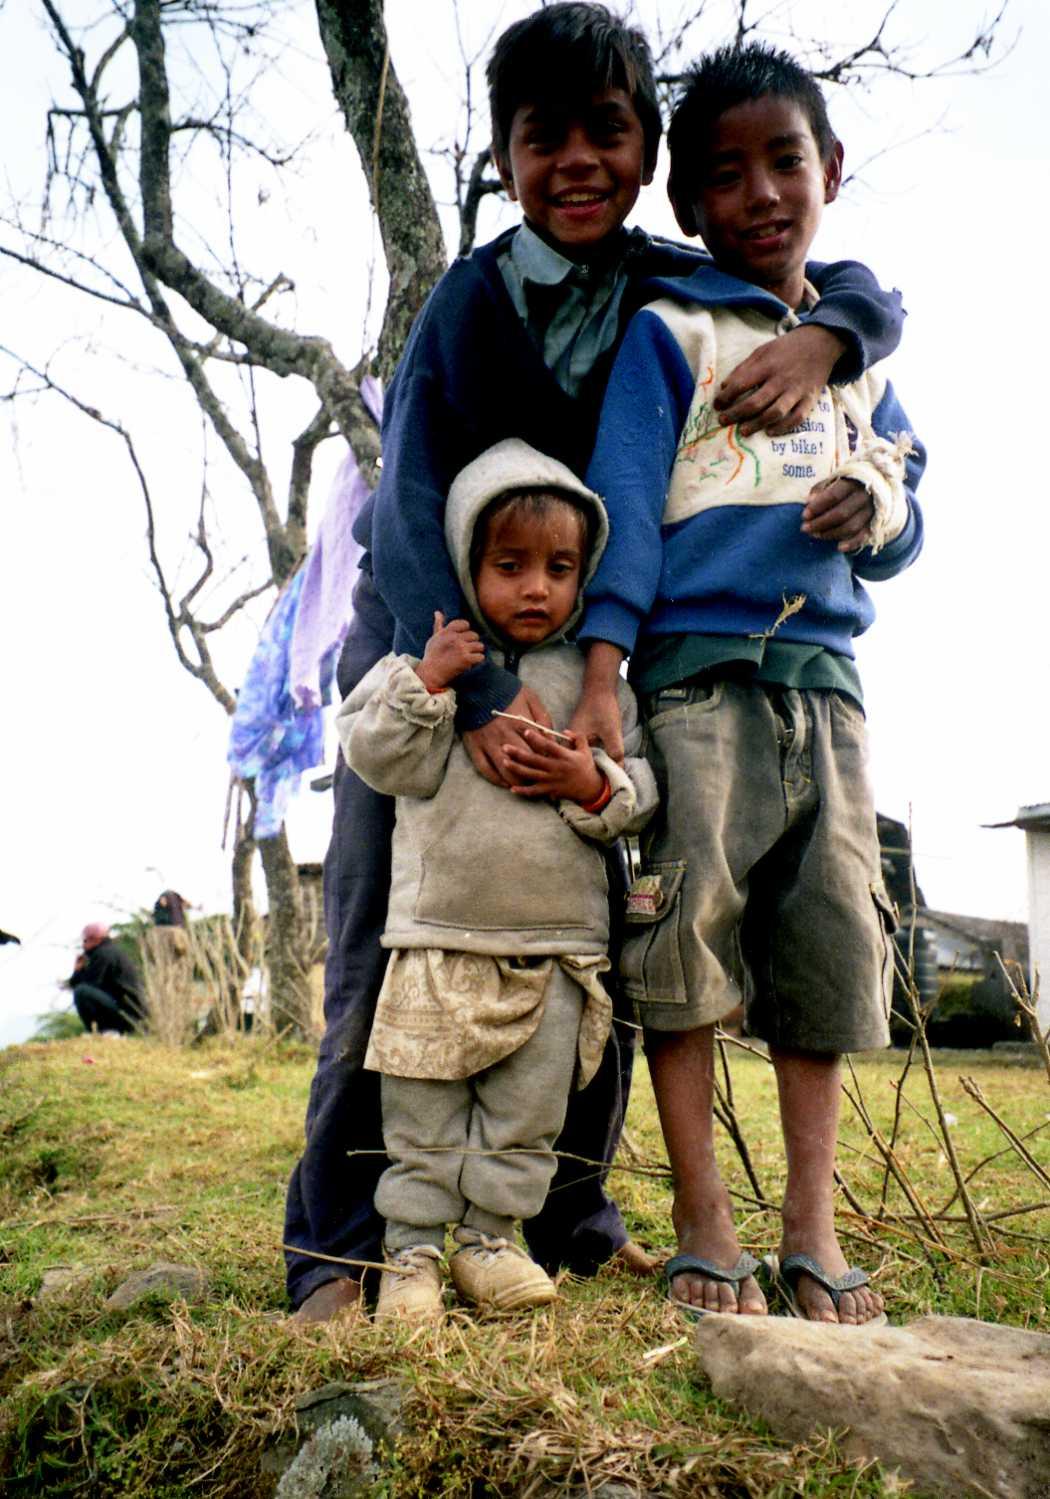 Children in Nepal, ネパールの子ども達